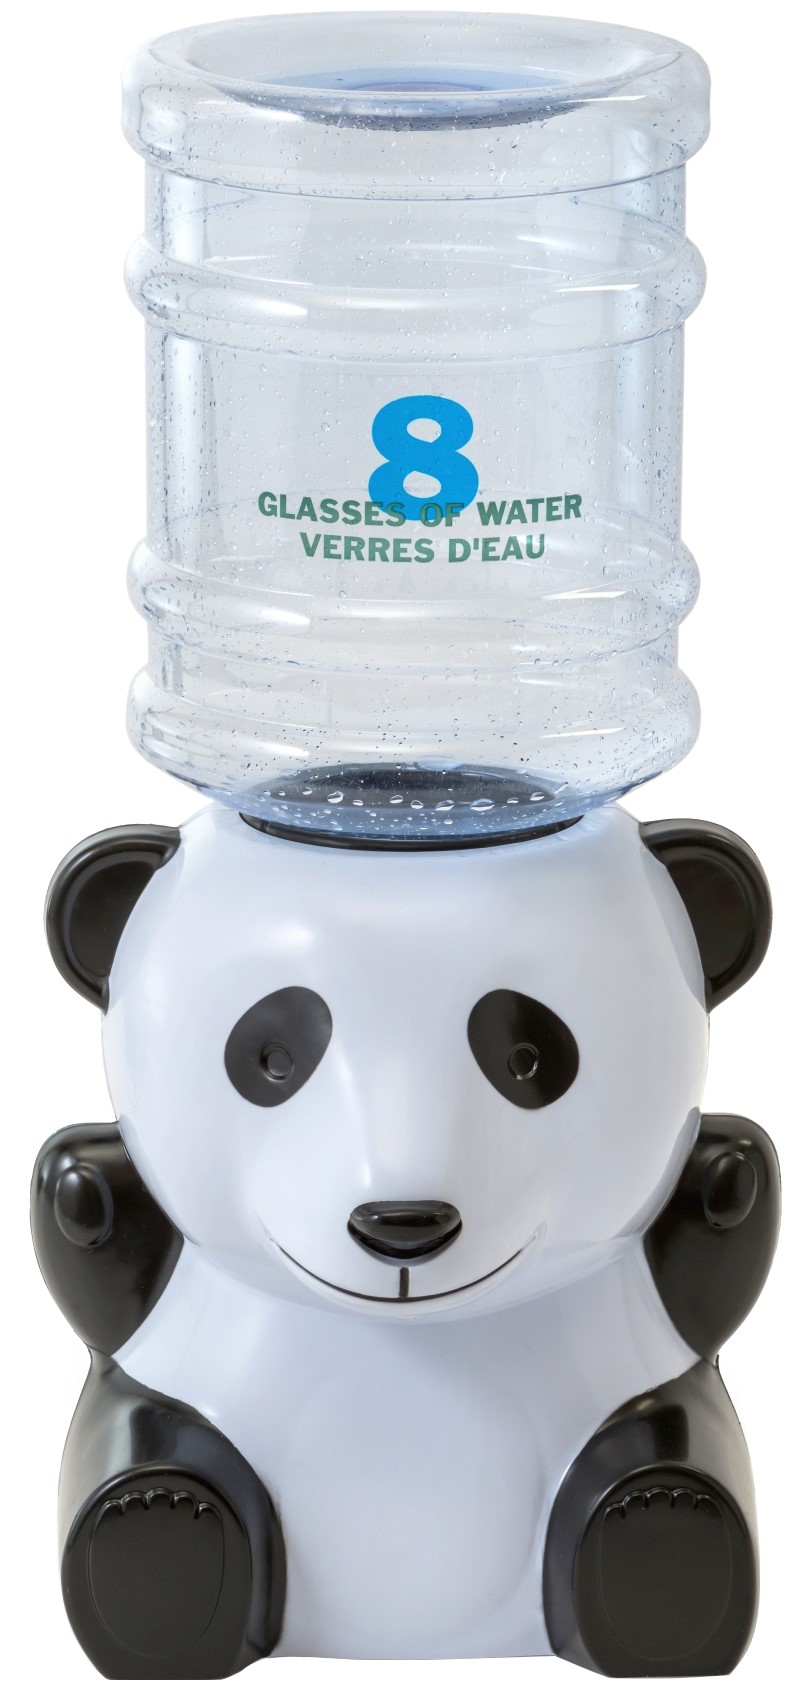 Кулер для воды VATTEN Kids Panda